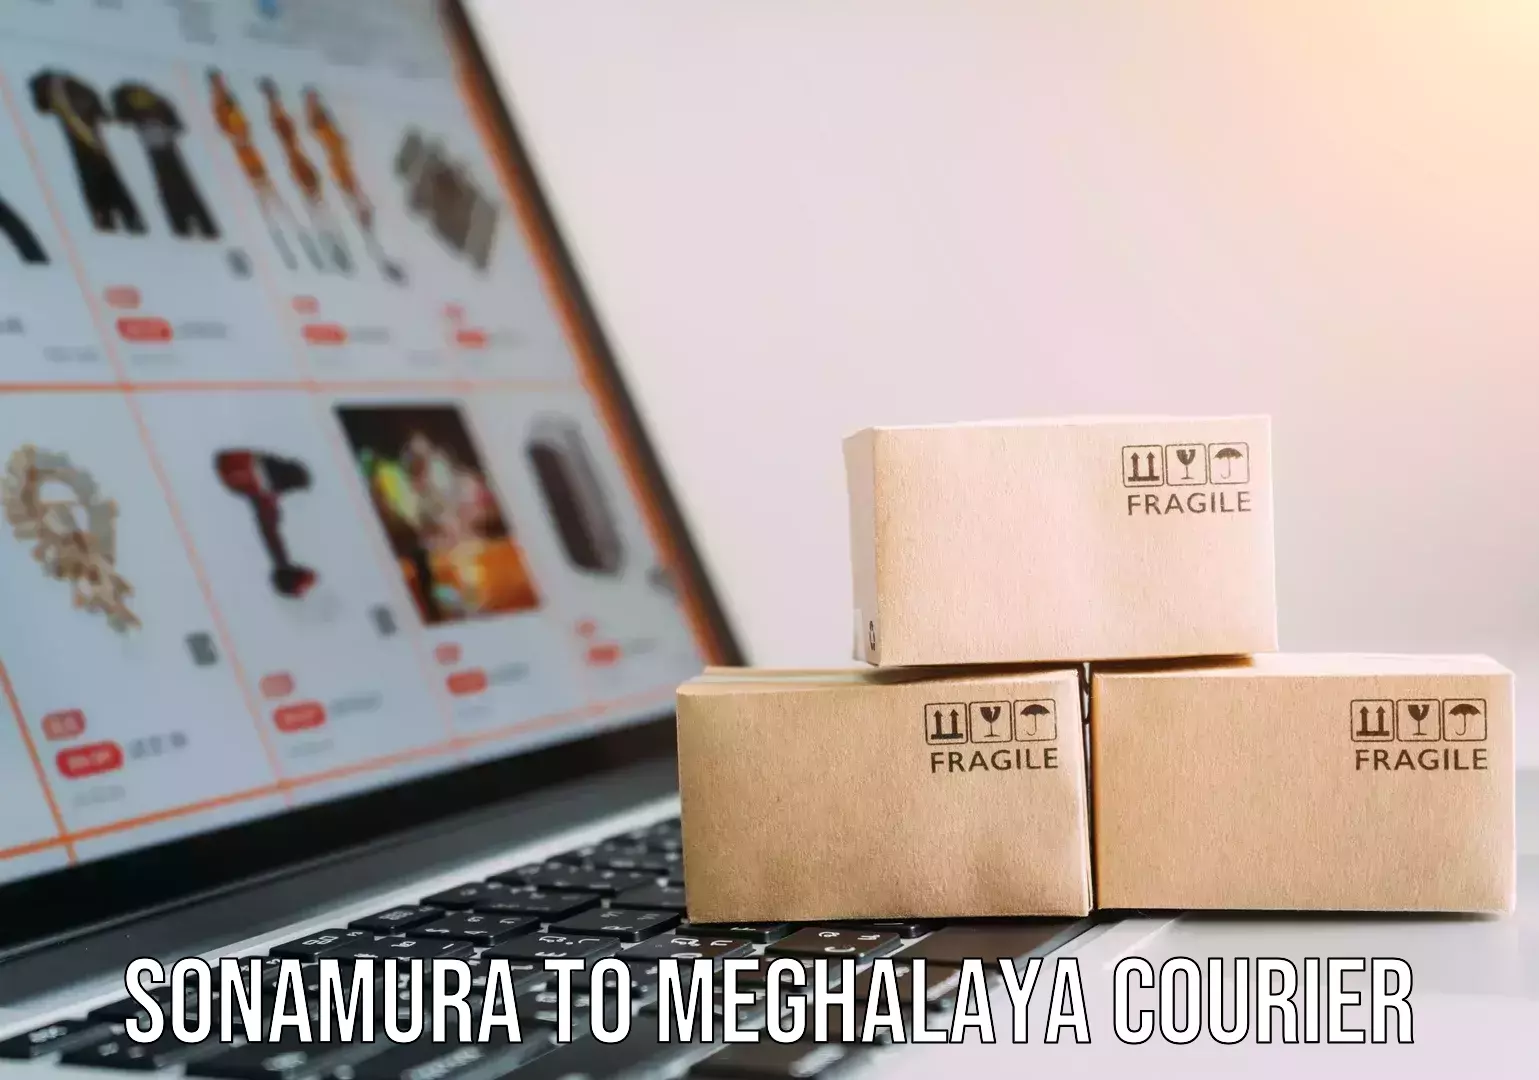 Digital shipping tools Sonamura to Meghalaya